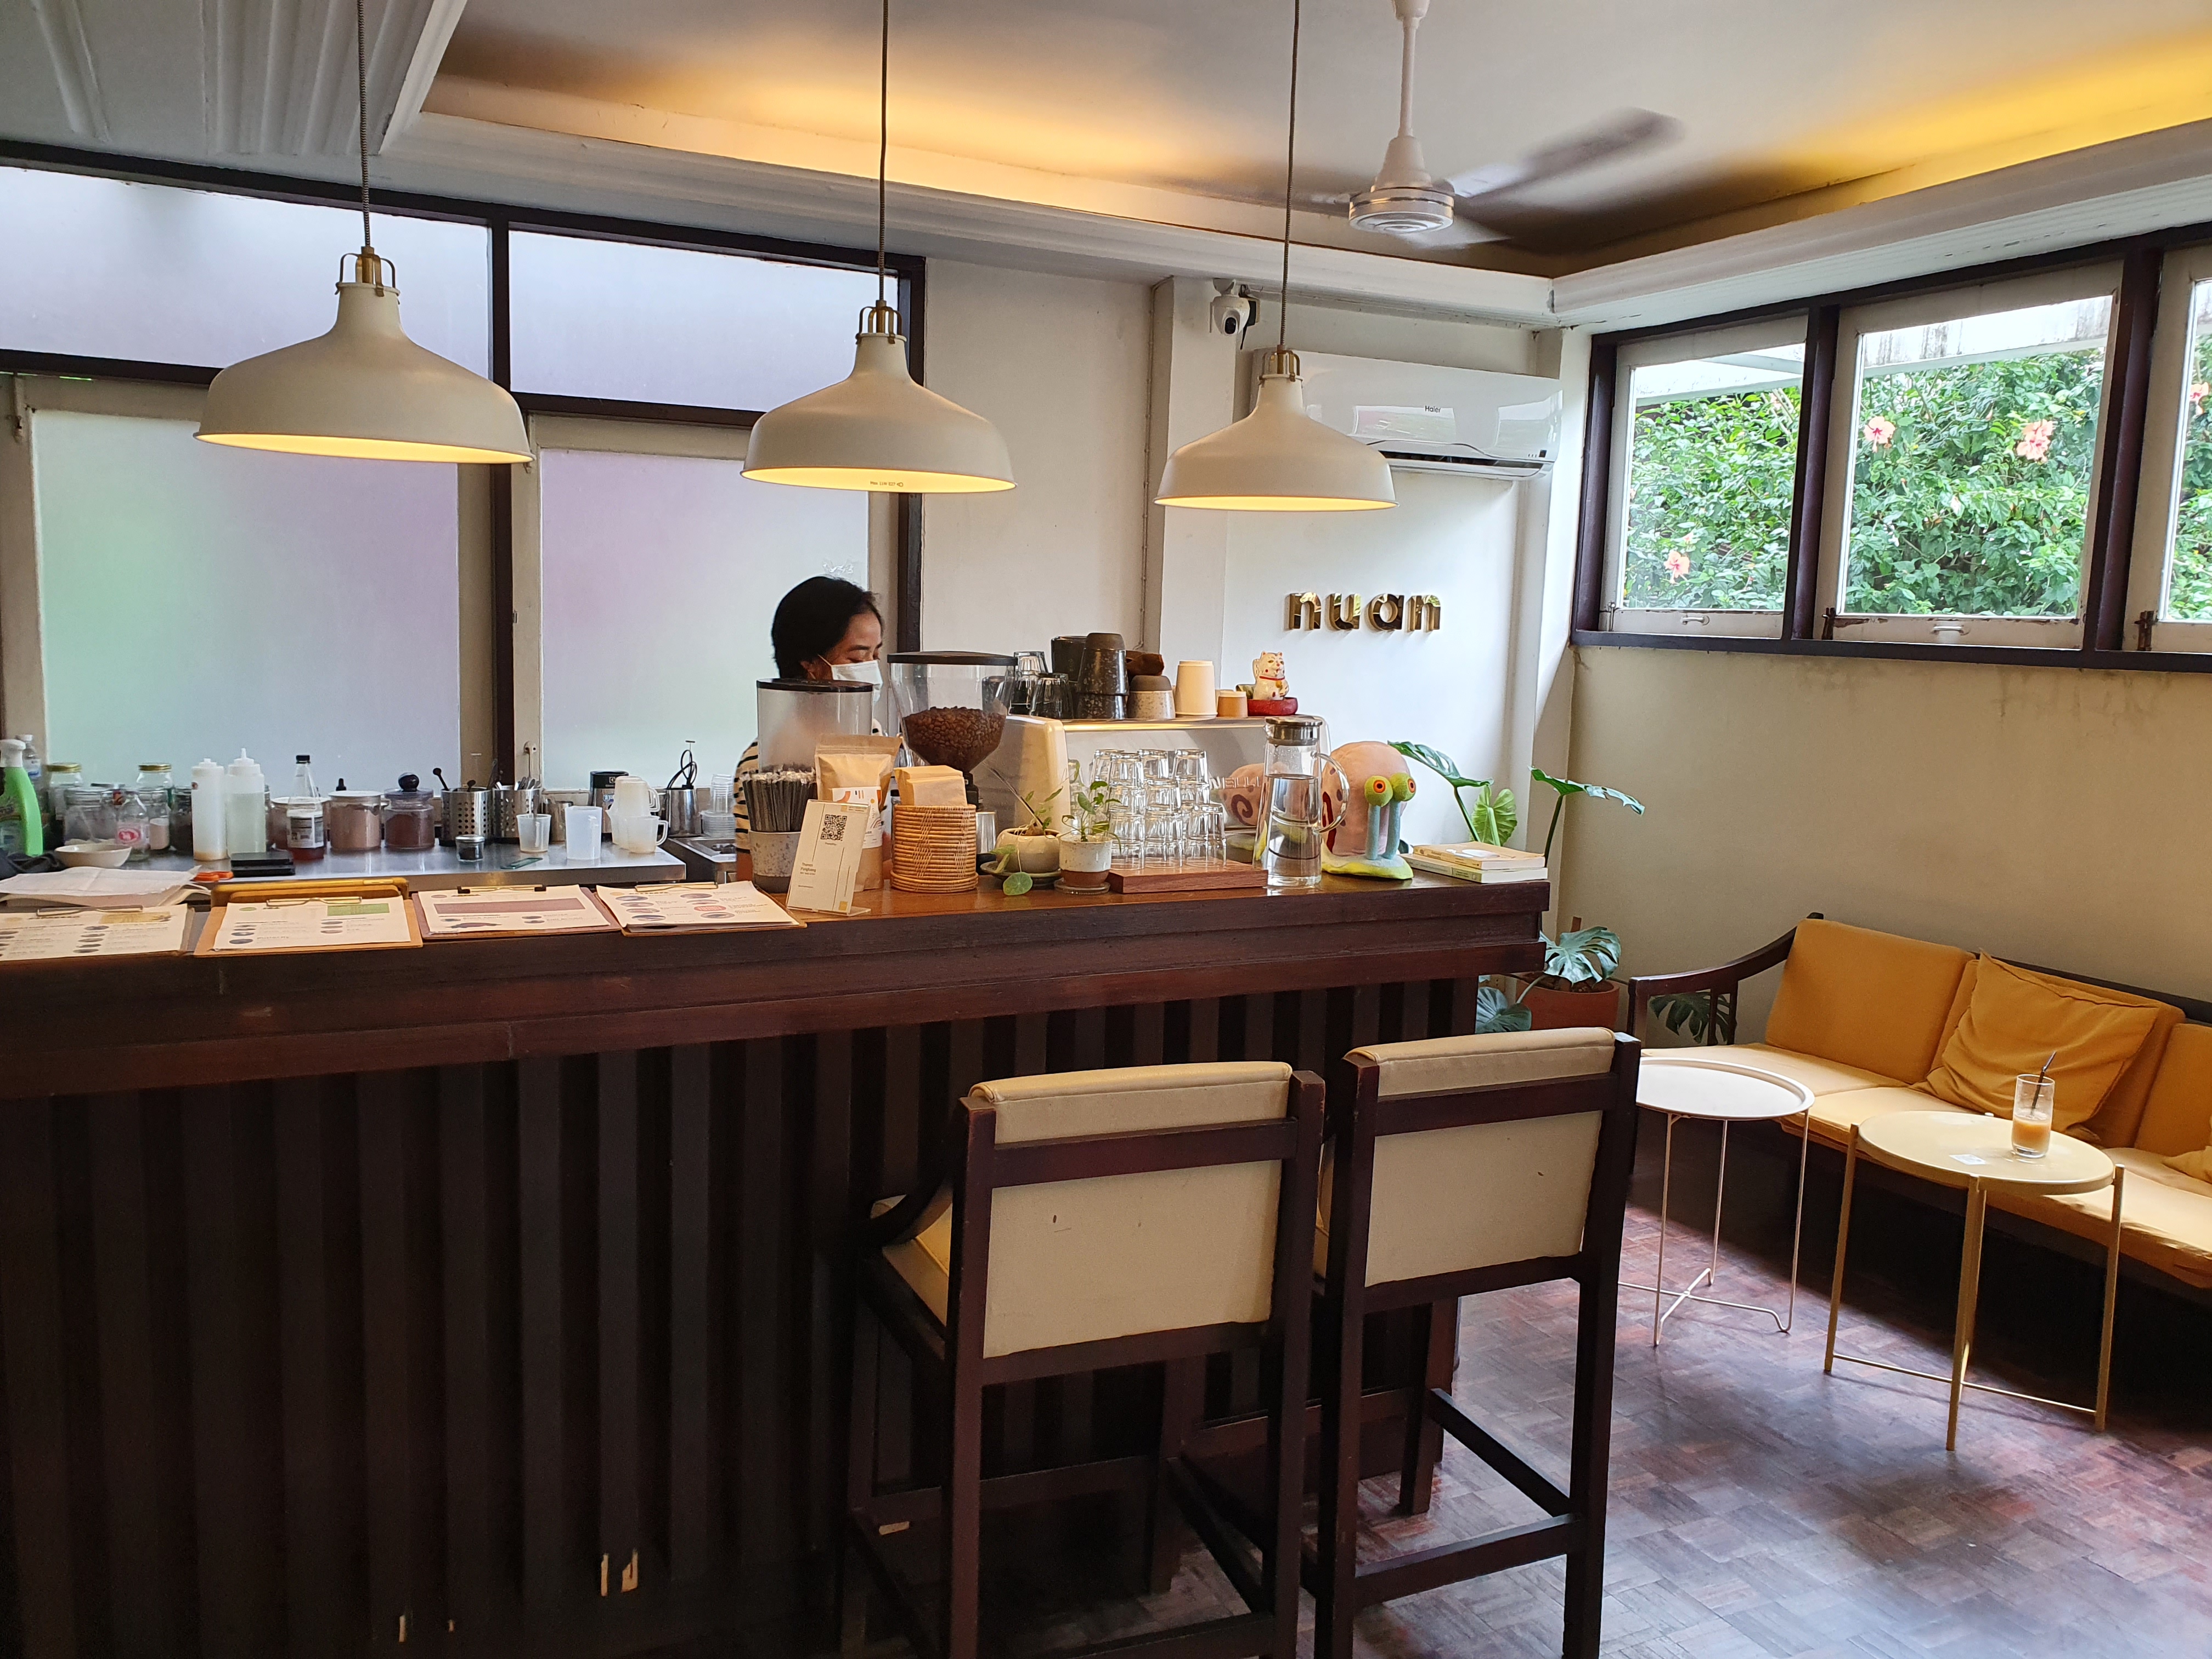 Nuan Cafe